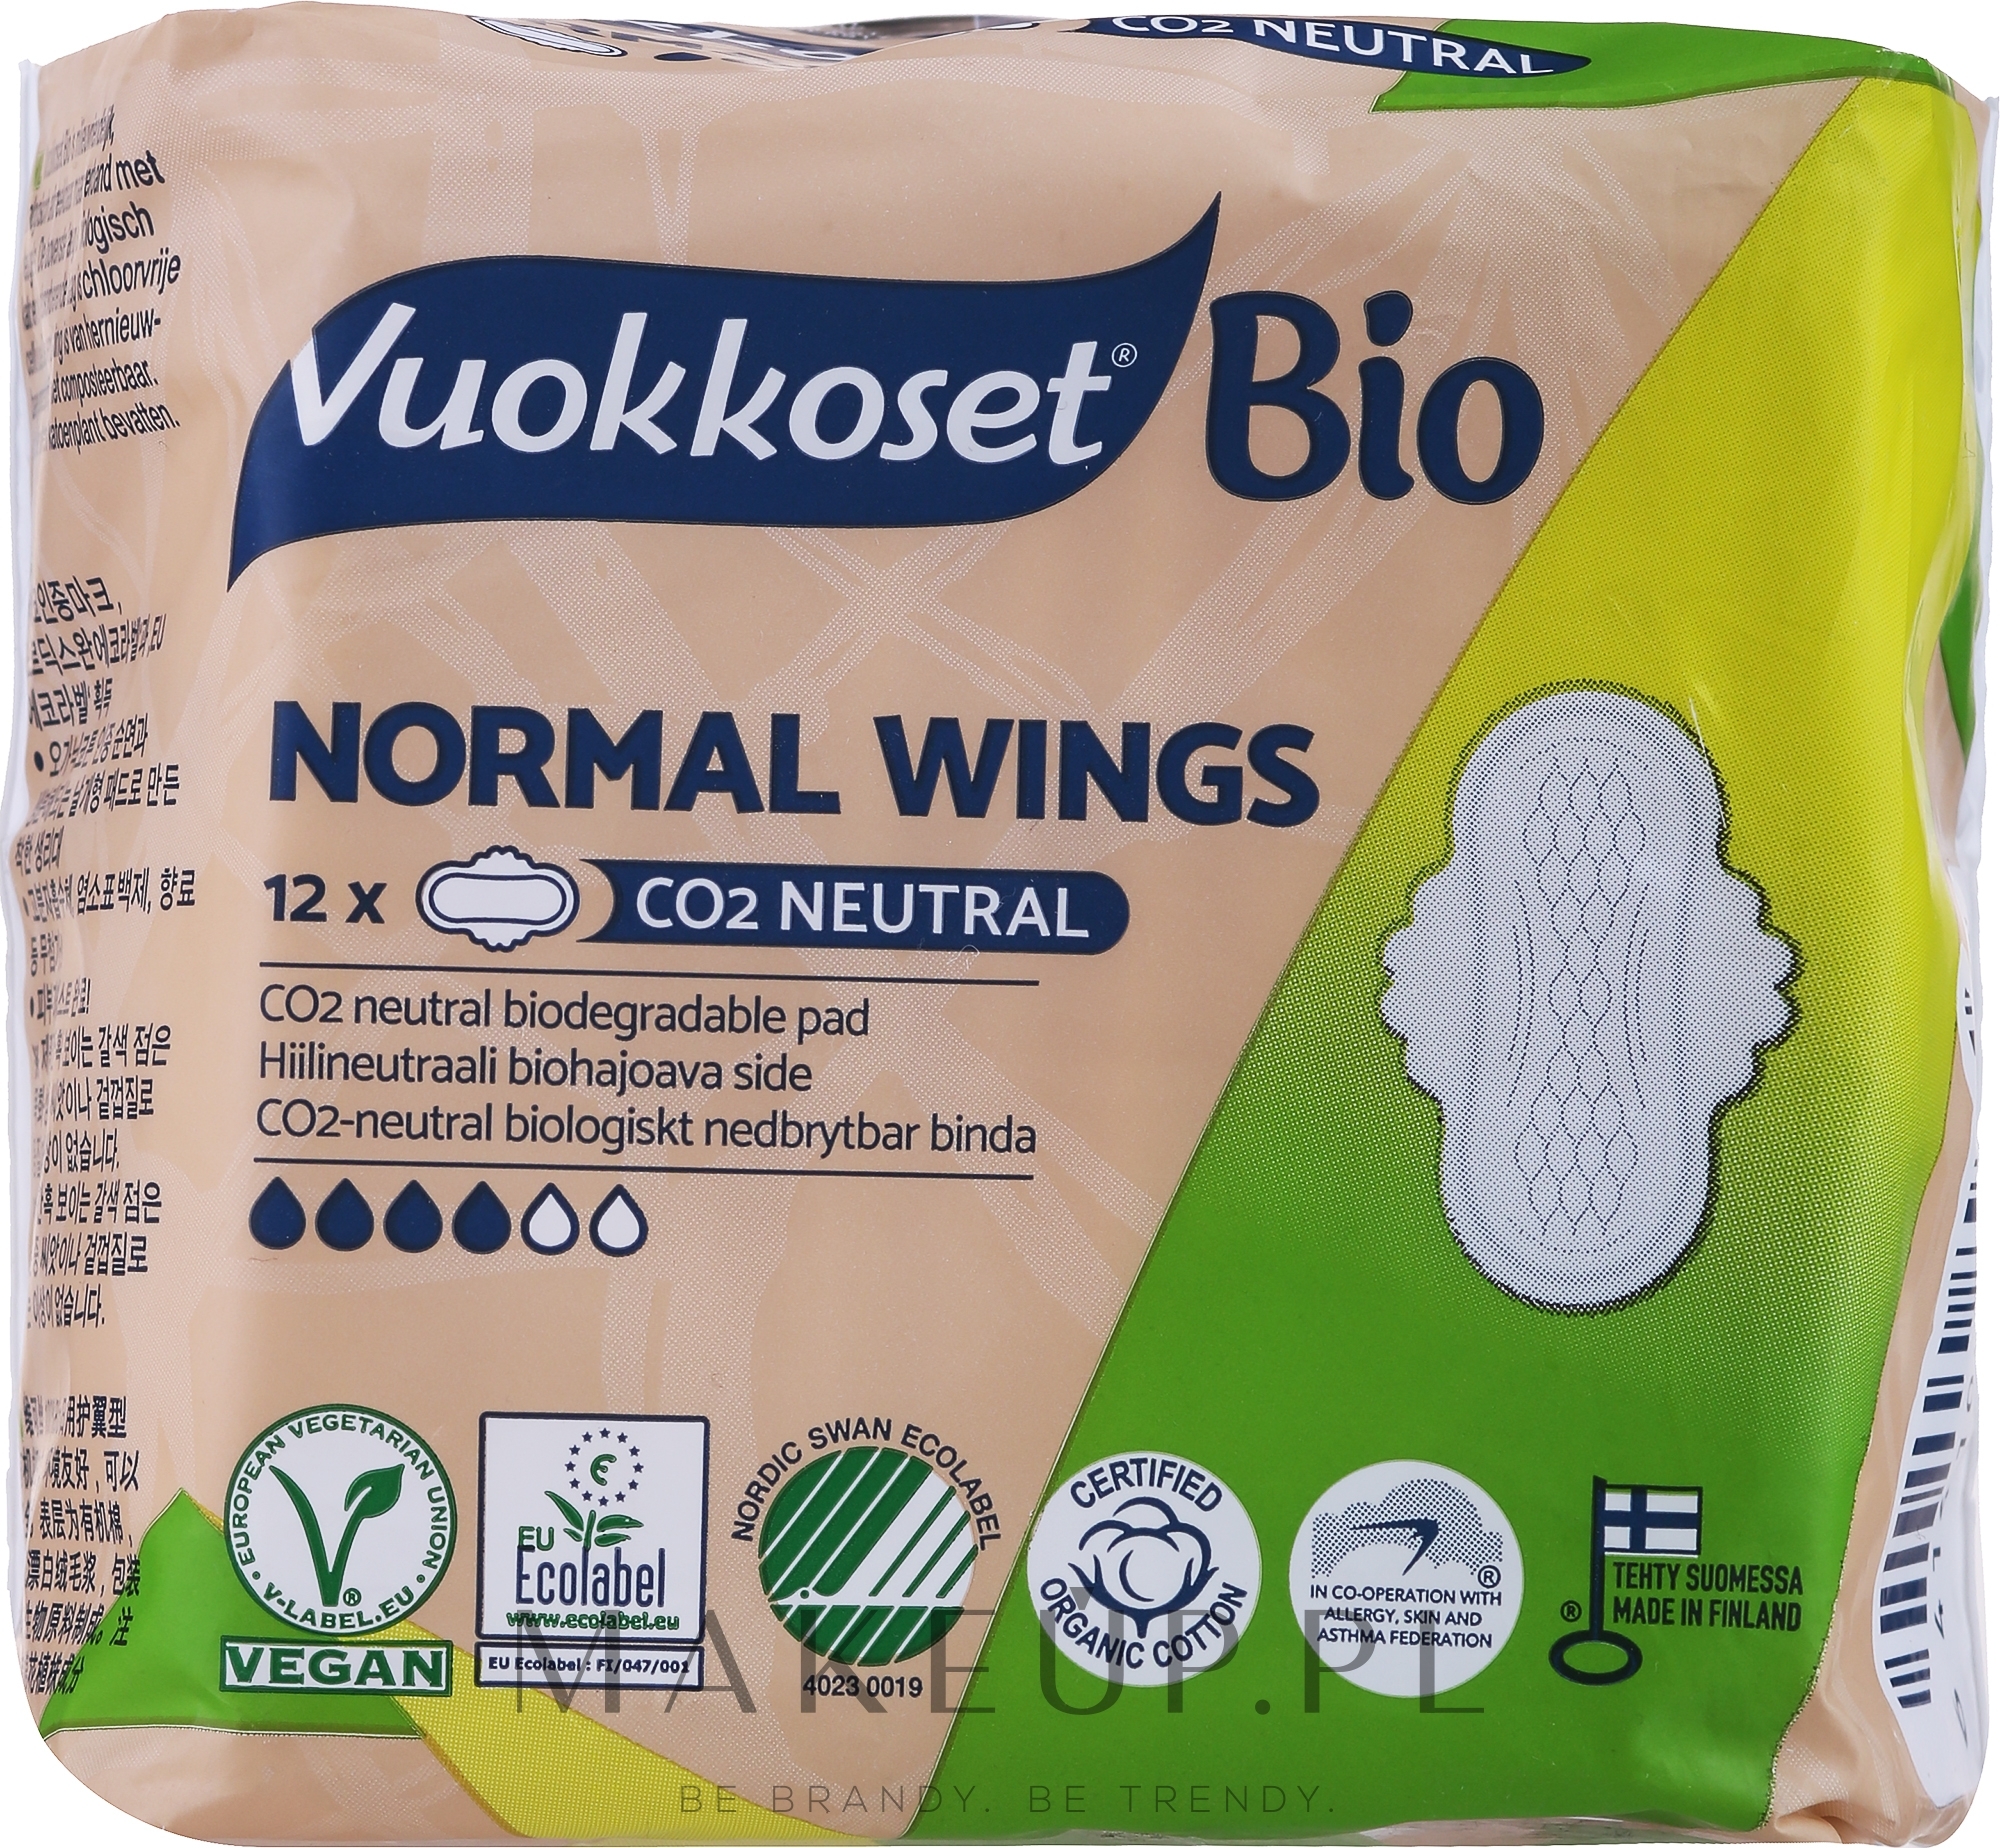 Podpaski higieniczne ze skrzydełkami, 12 szt. - Vuokkoset 100% Bio Normal Wings — Zdjęcie 12 szt.